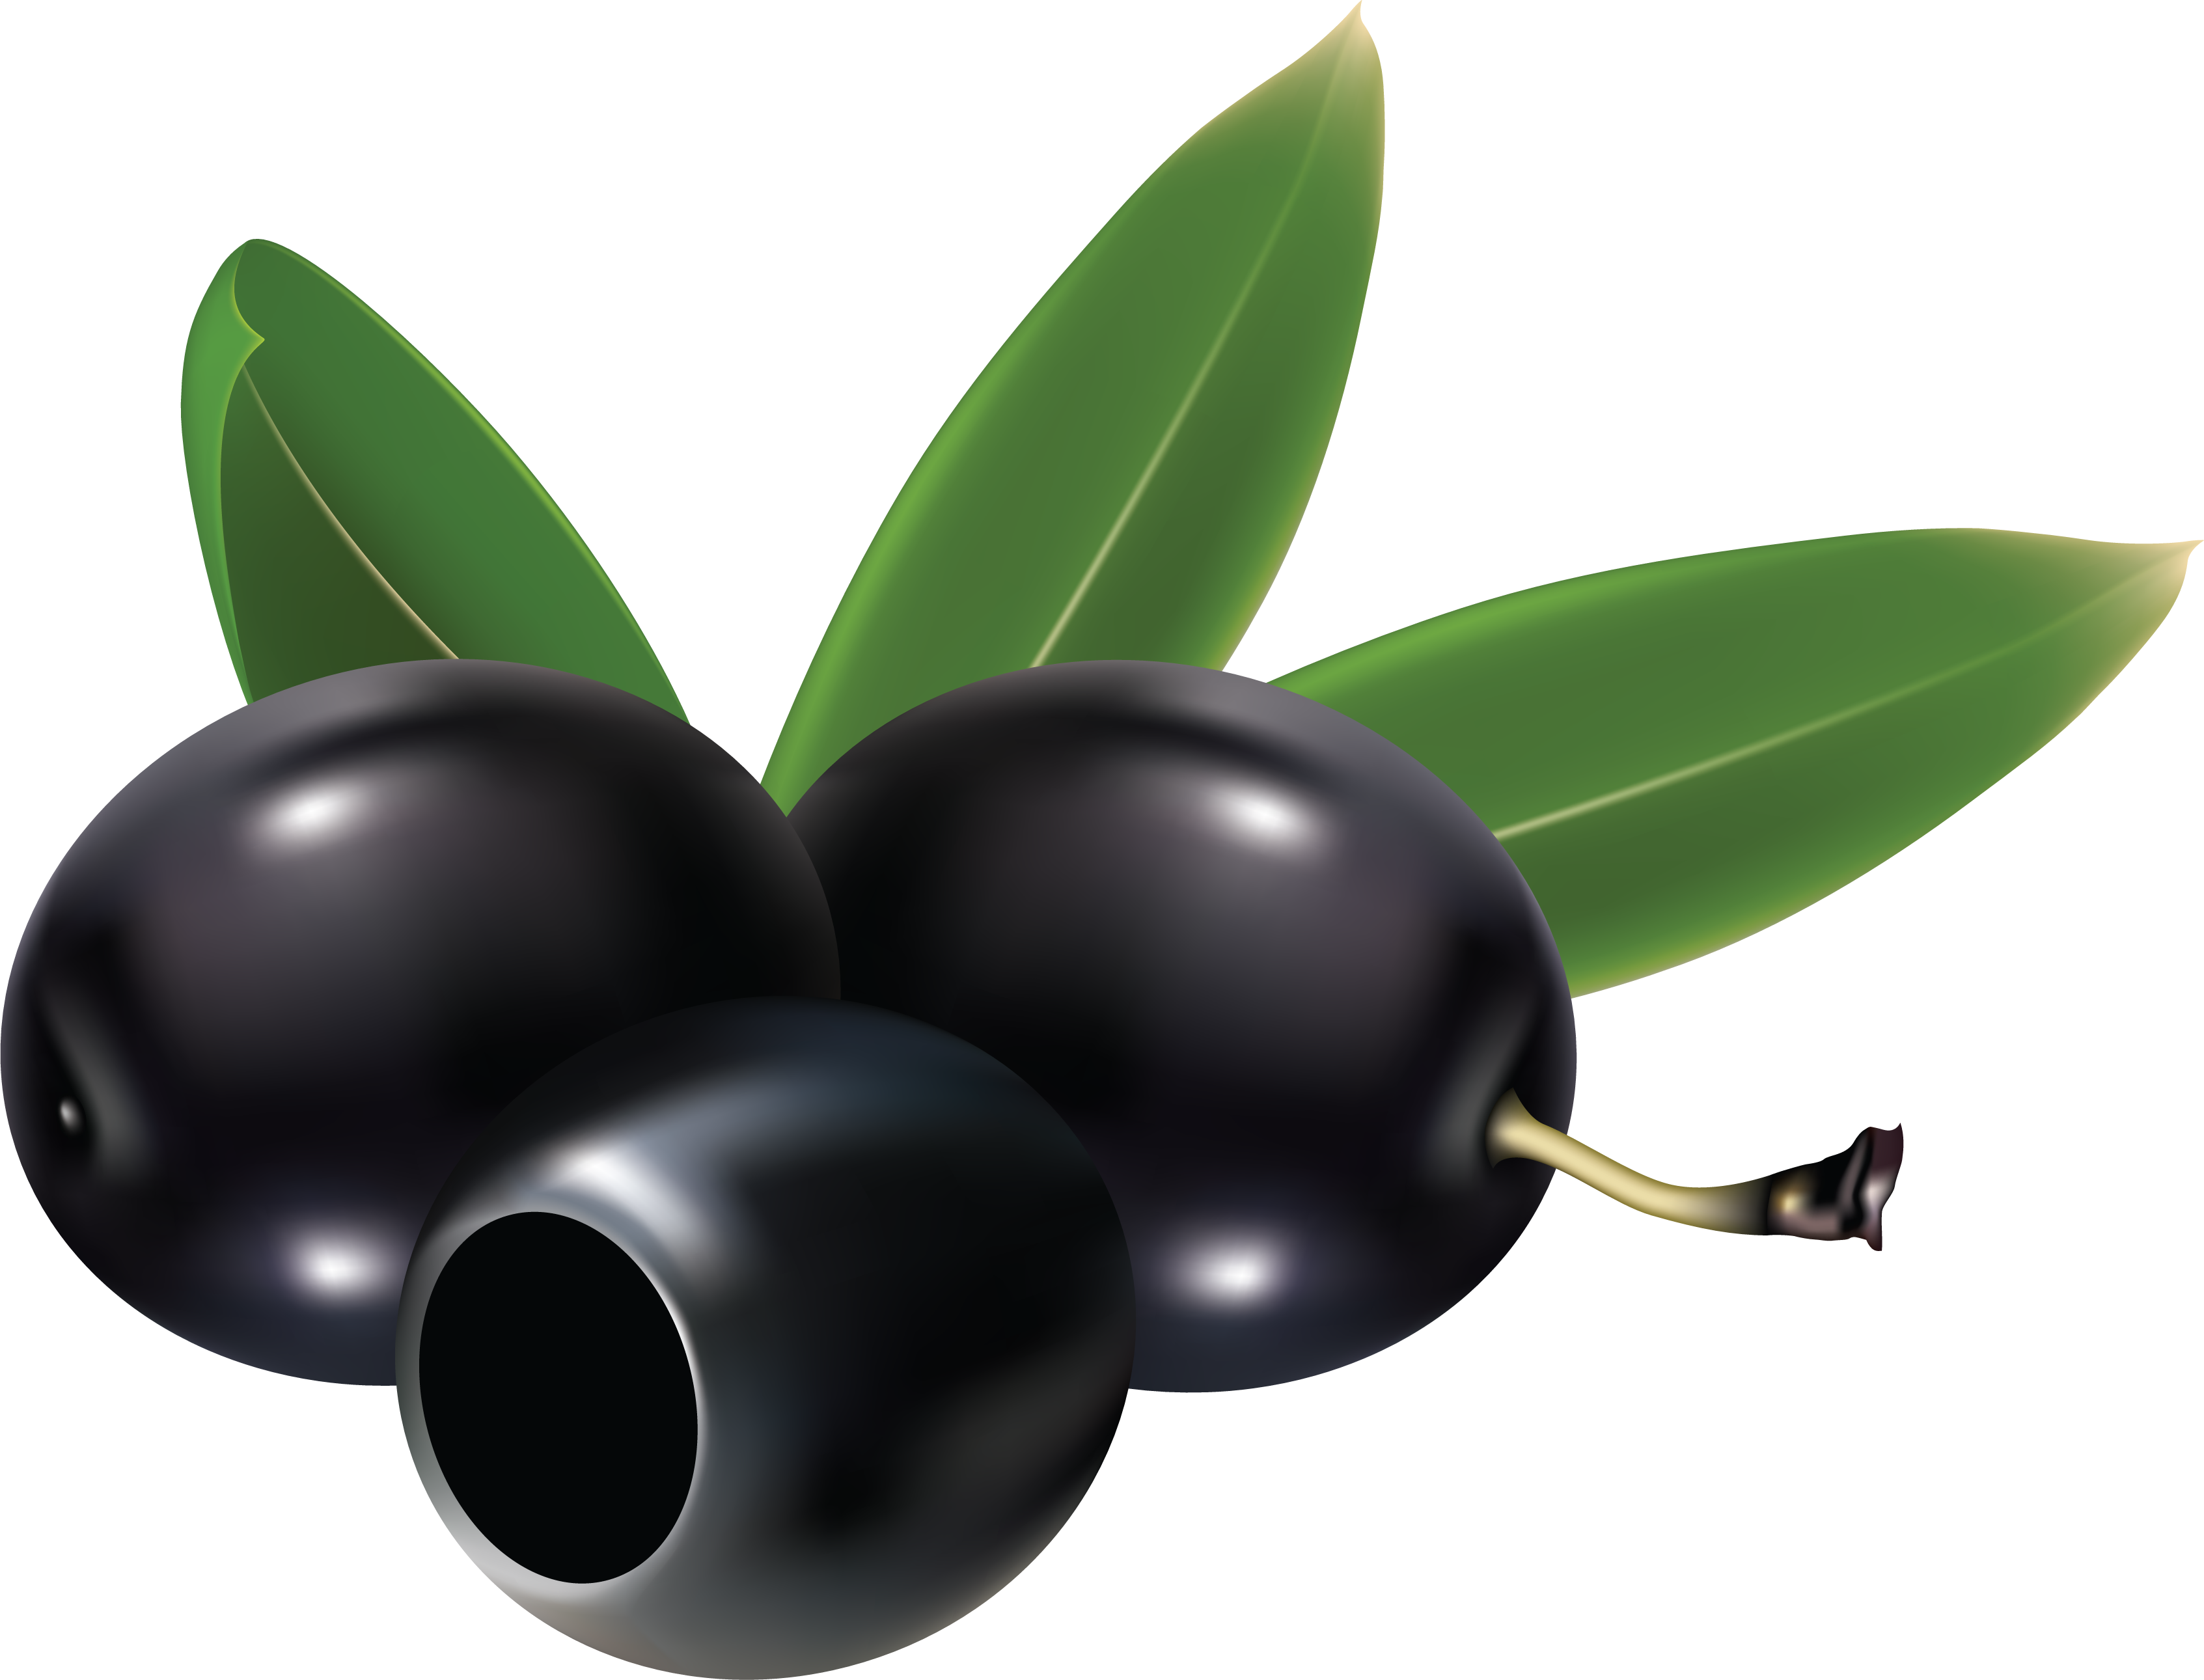 Olives noires